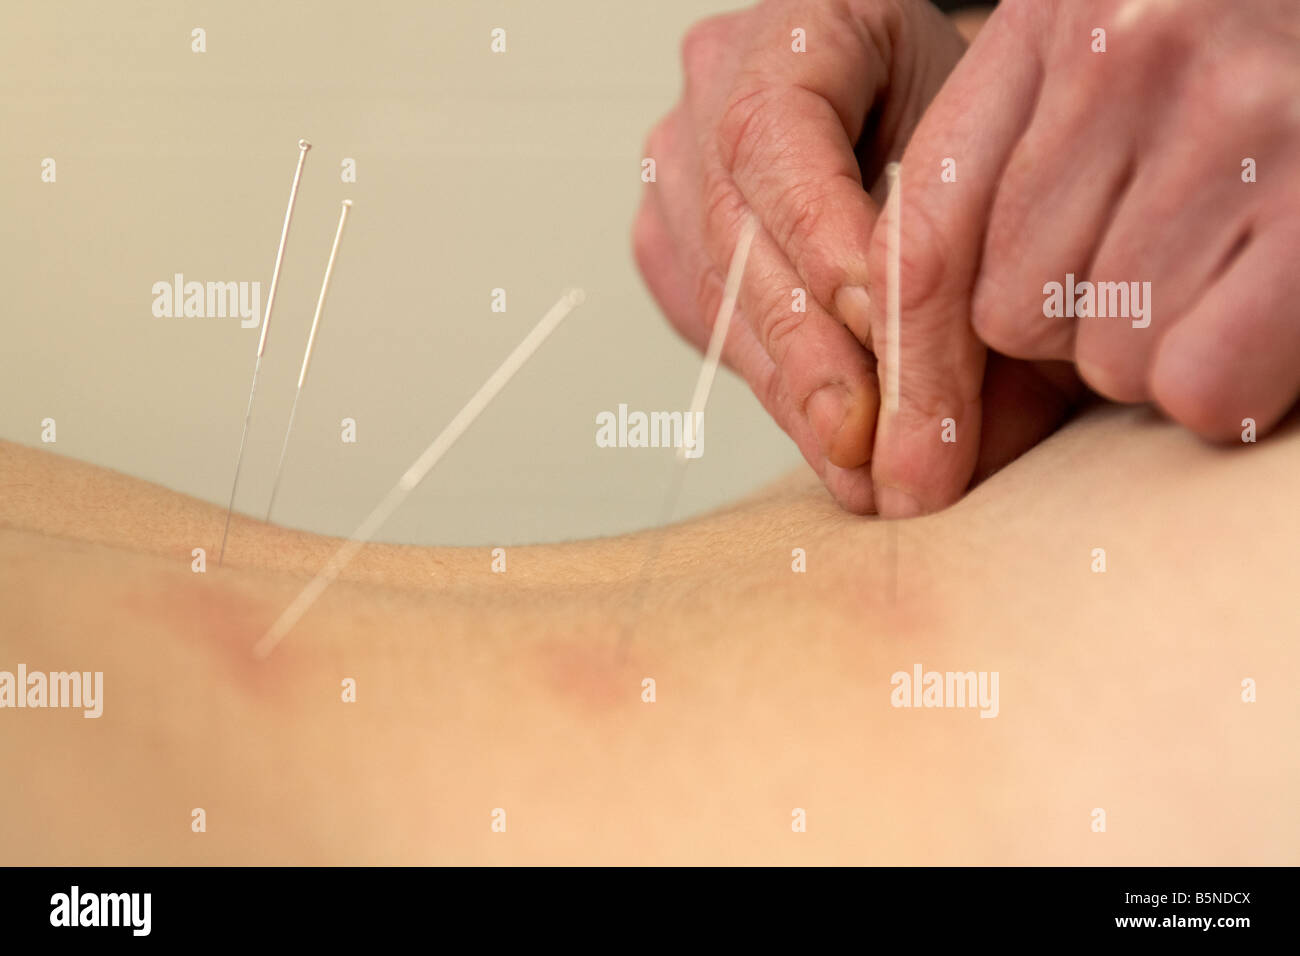 Acupunturista femenina aplicando las agujas de acupuntura en la parte inferior de la espalda de una mujer adulta fines del veinte para aliviar el dolor de espalda Foto de stock